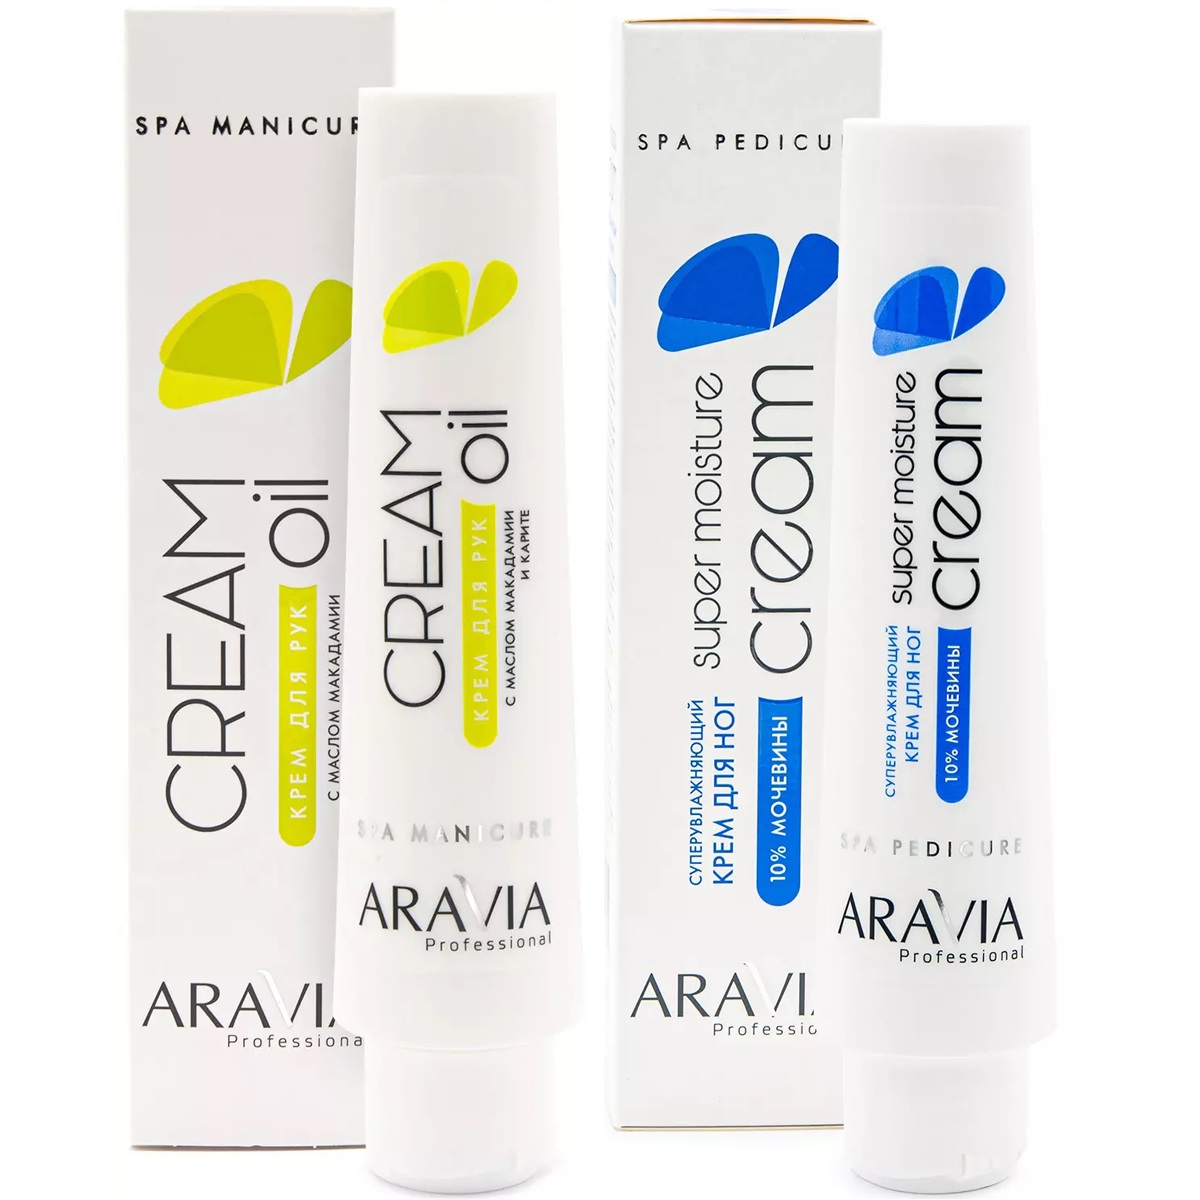 Aravia Professional Набор для ухода за кожей тела: крем для рук, 100 мл + крем для ног, 100 мл (Aravia Professional, SPA маникюр)